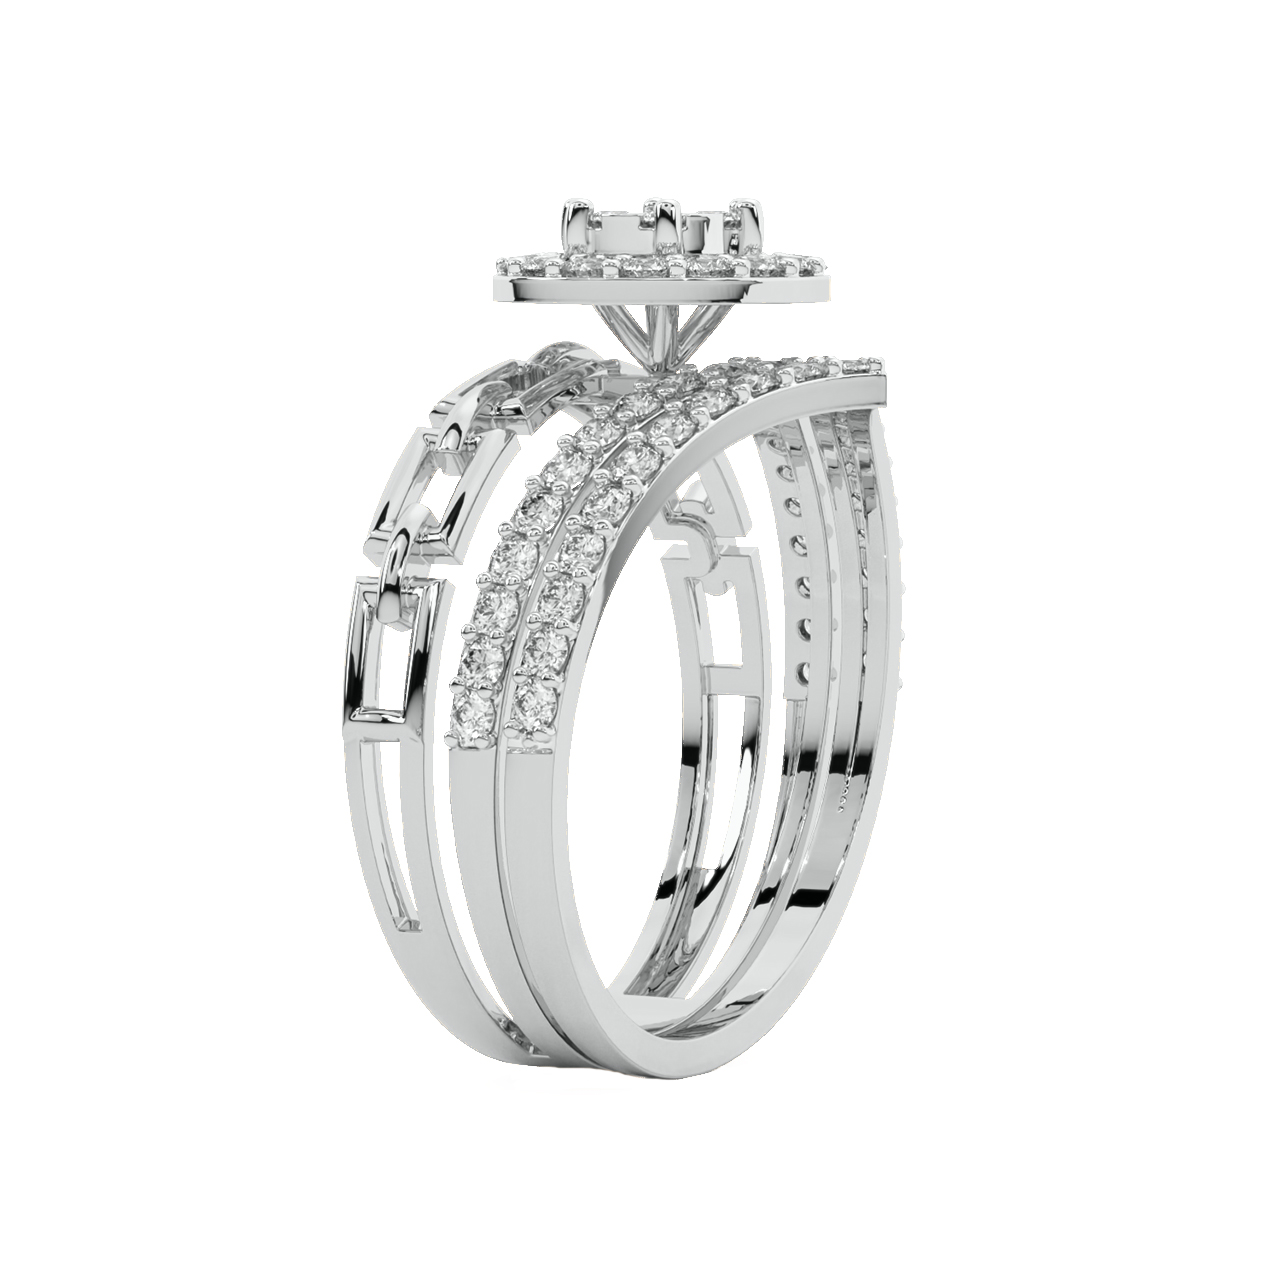 Louis Diamond Engagement Ring